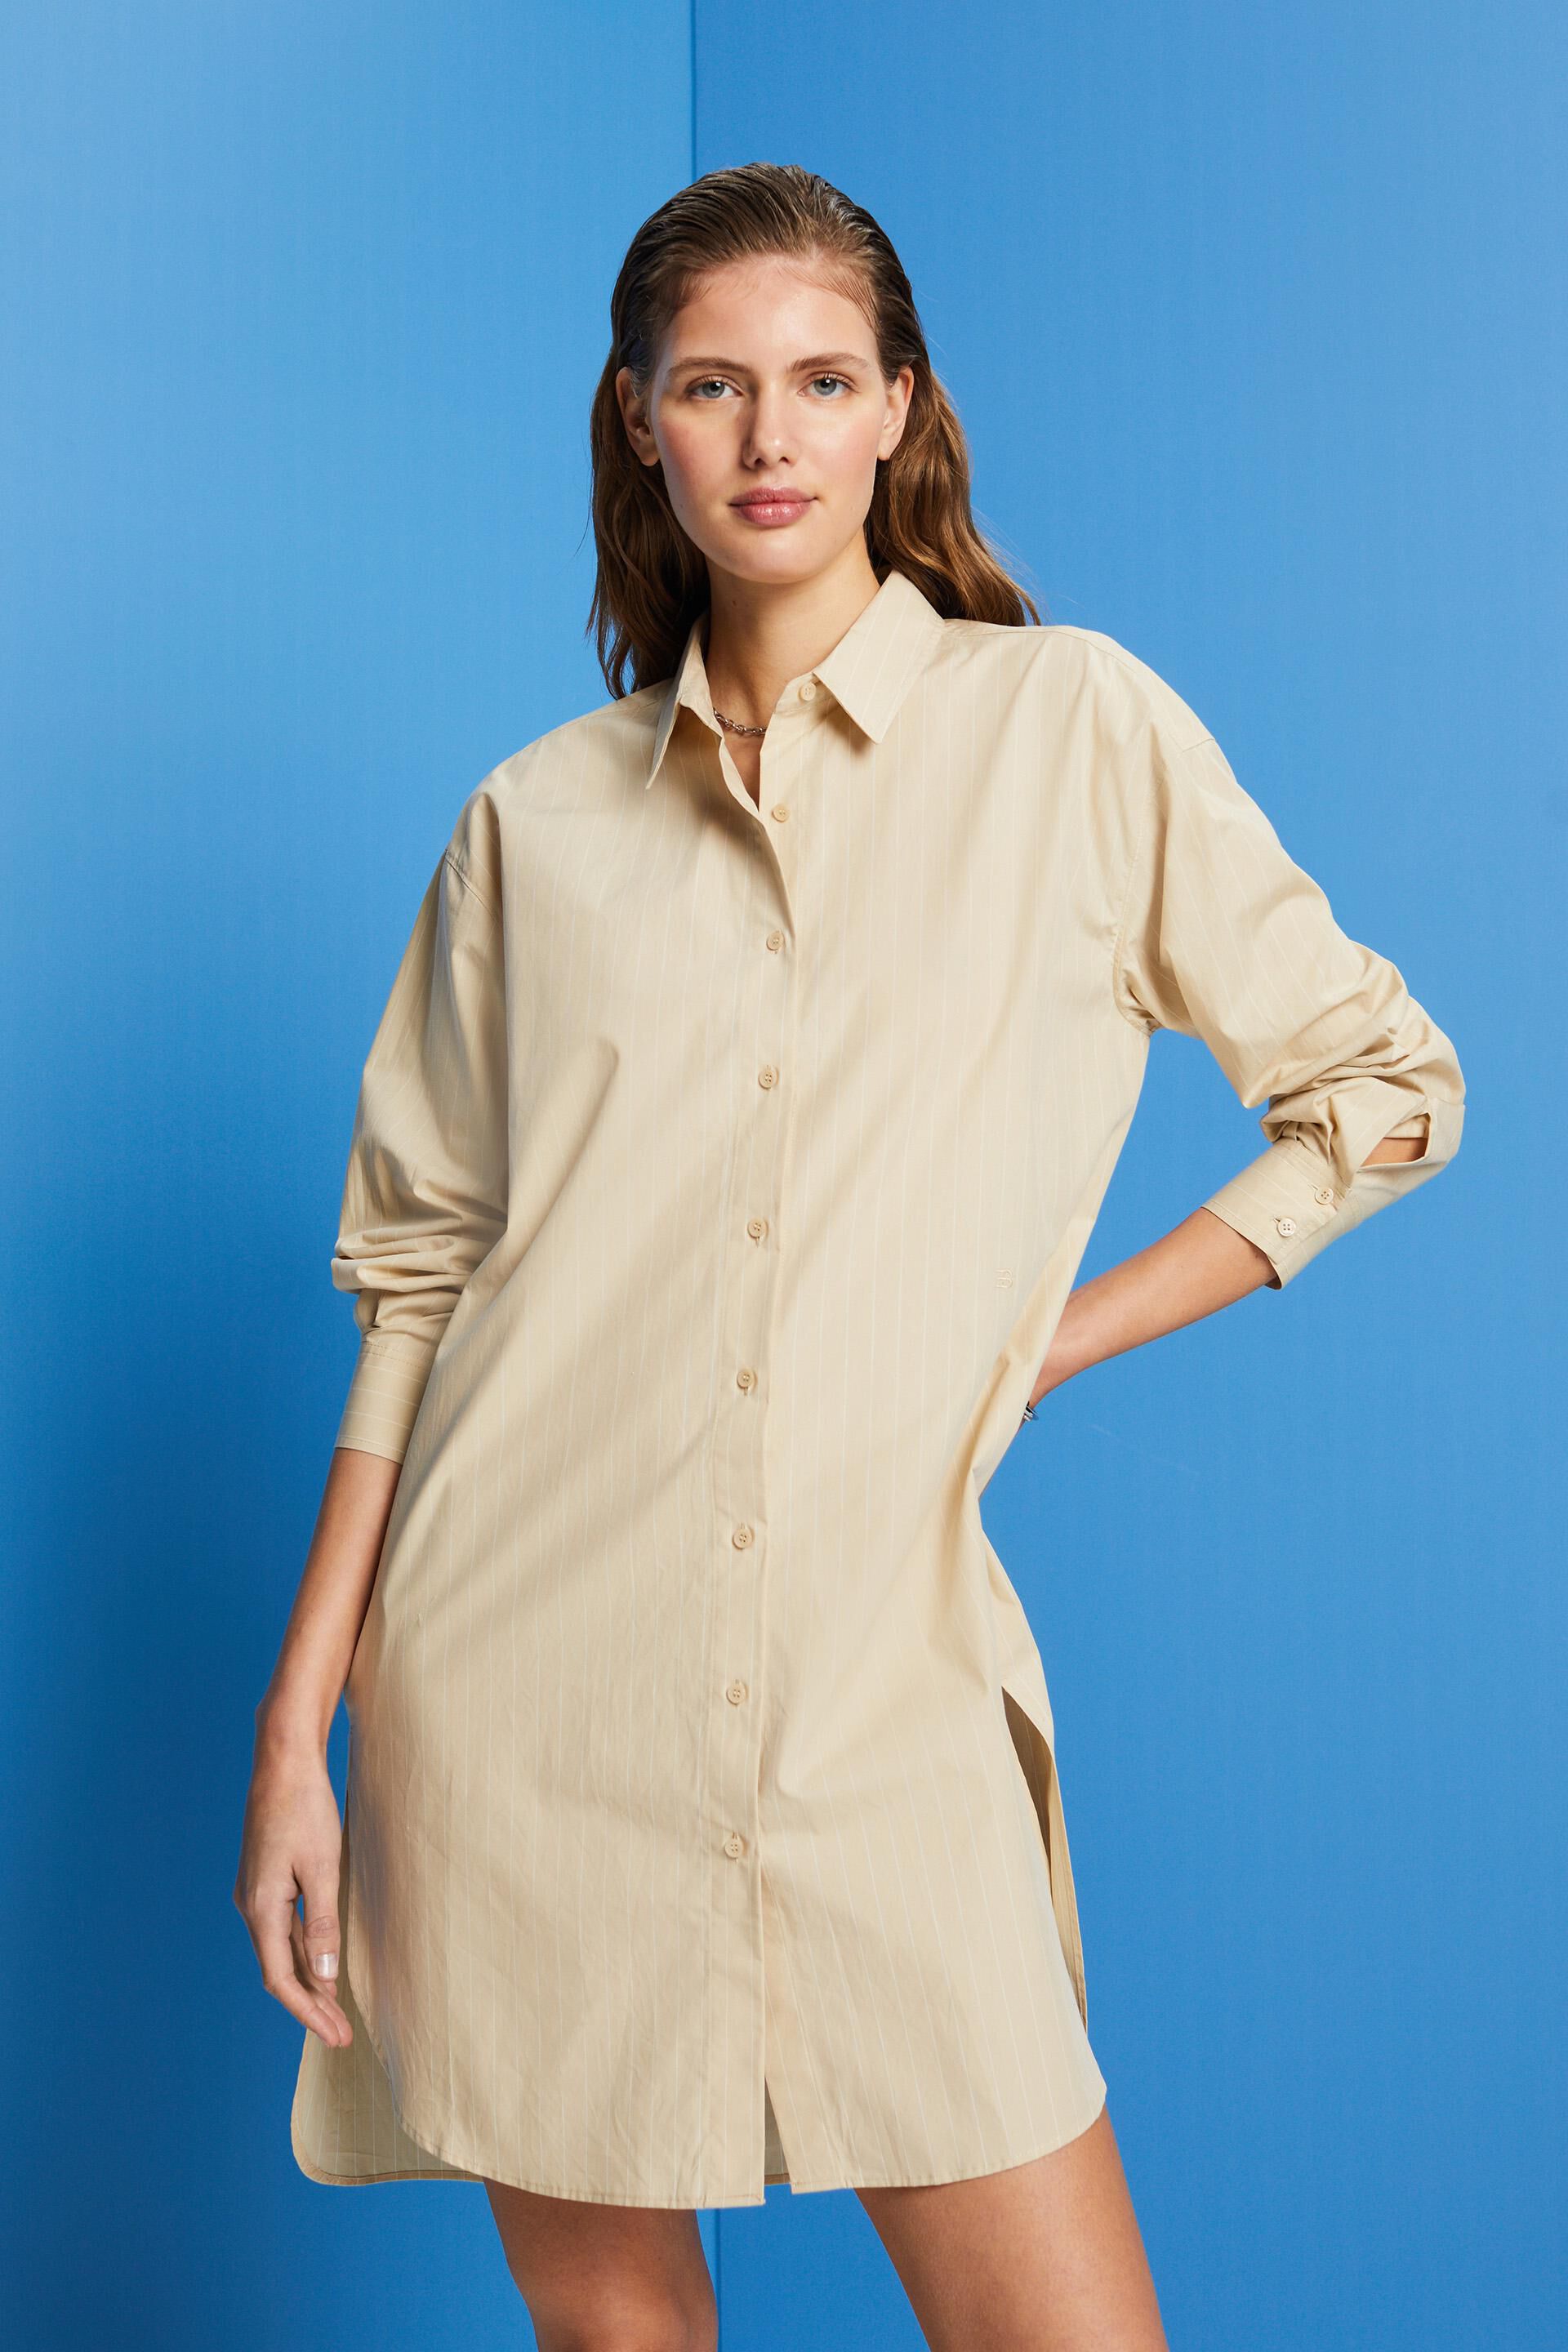 Esprit cotton dress, 100% Pinstriped shirt